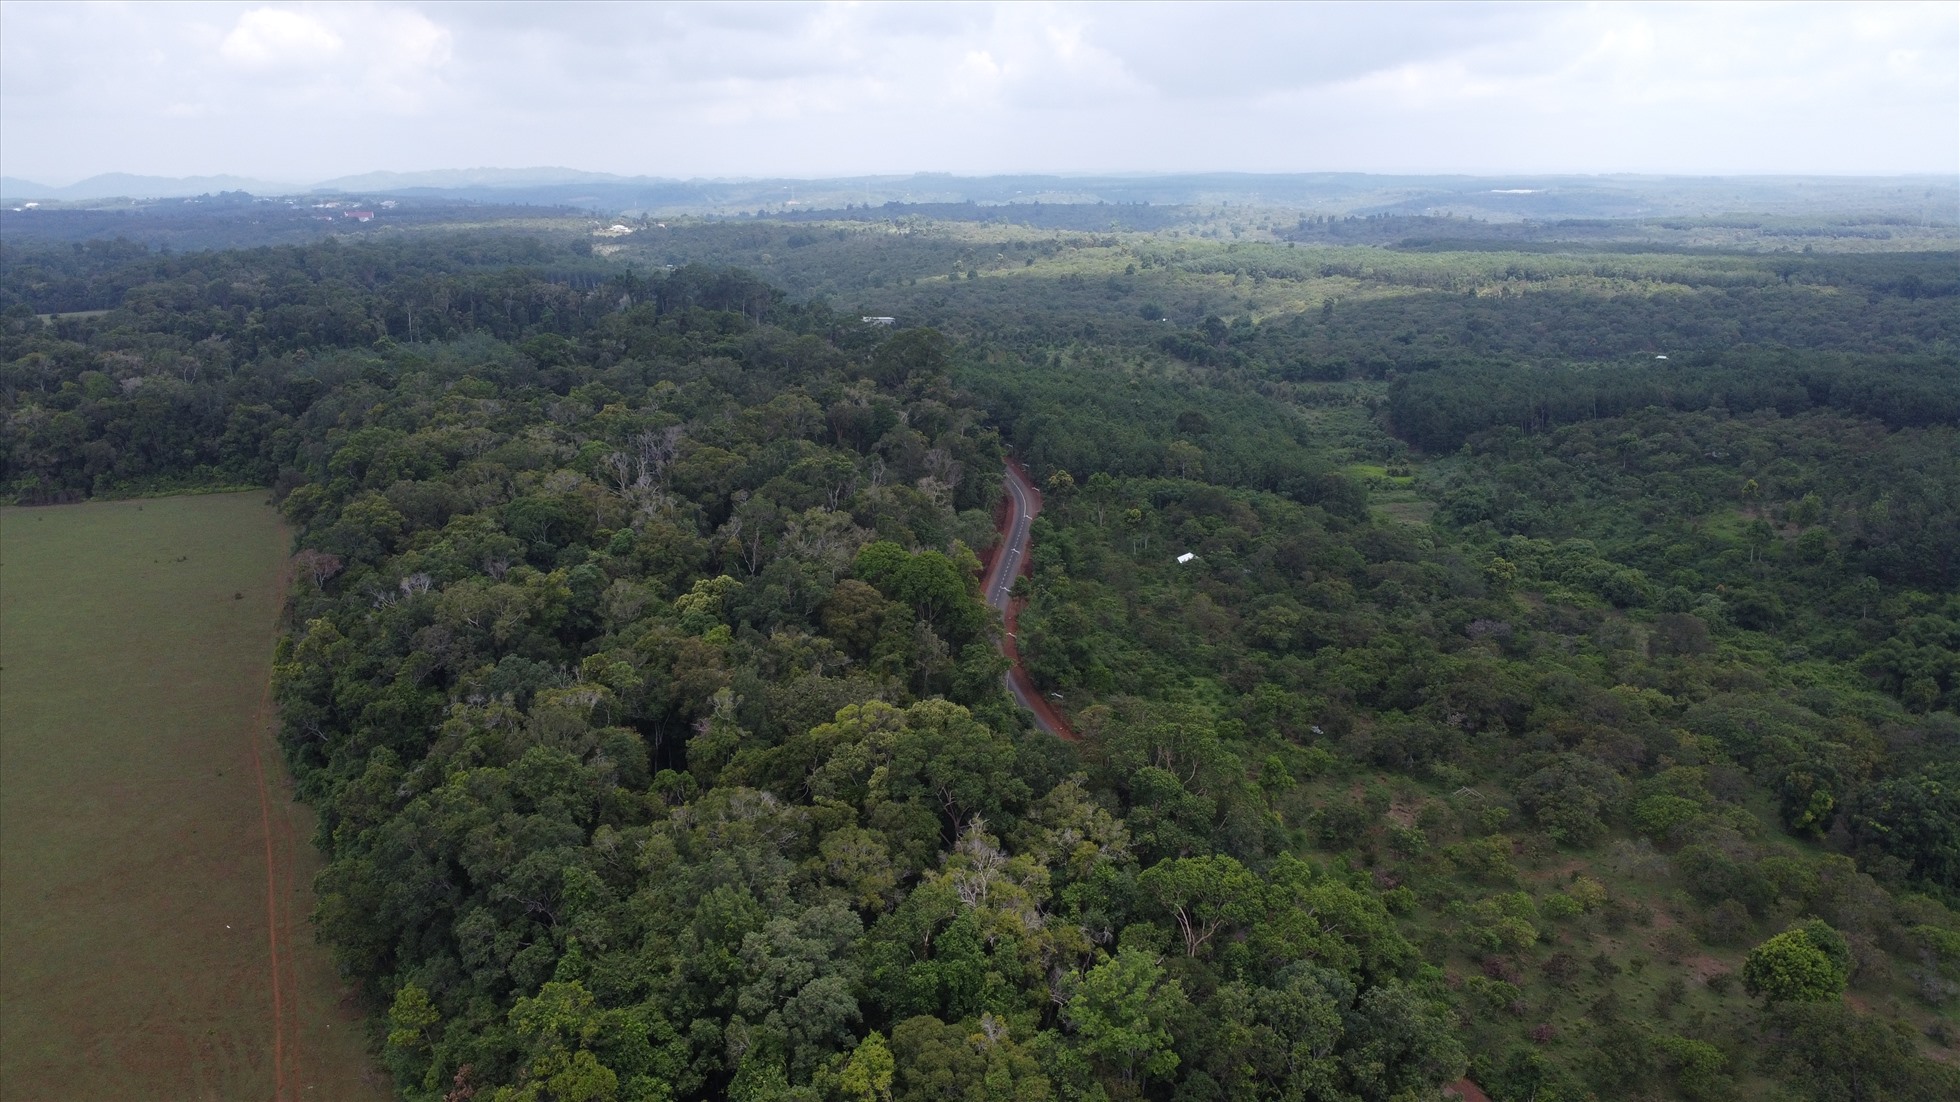 Nhìn từ trên cao xuống vùng đất còn nhiều rừng nhất ở Bình Phước - 3